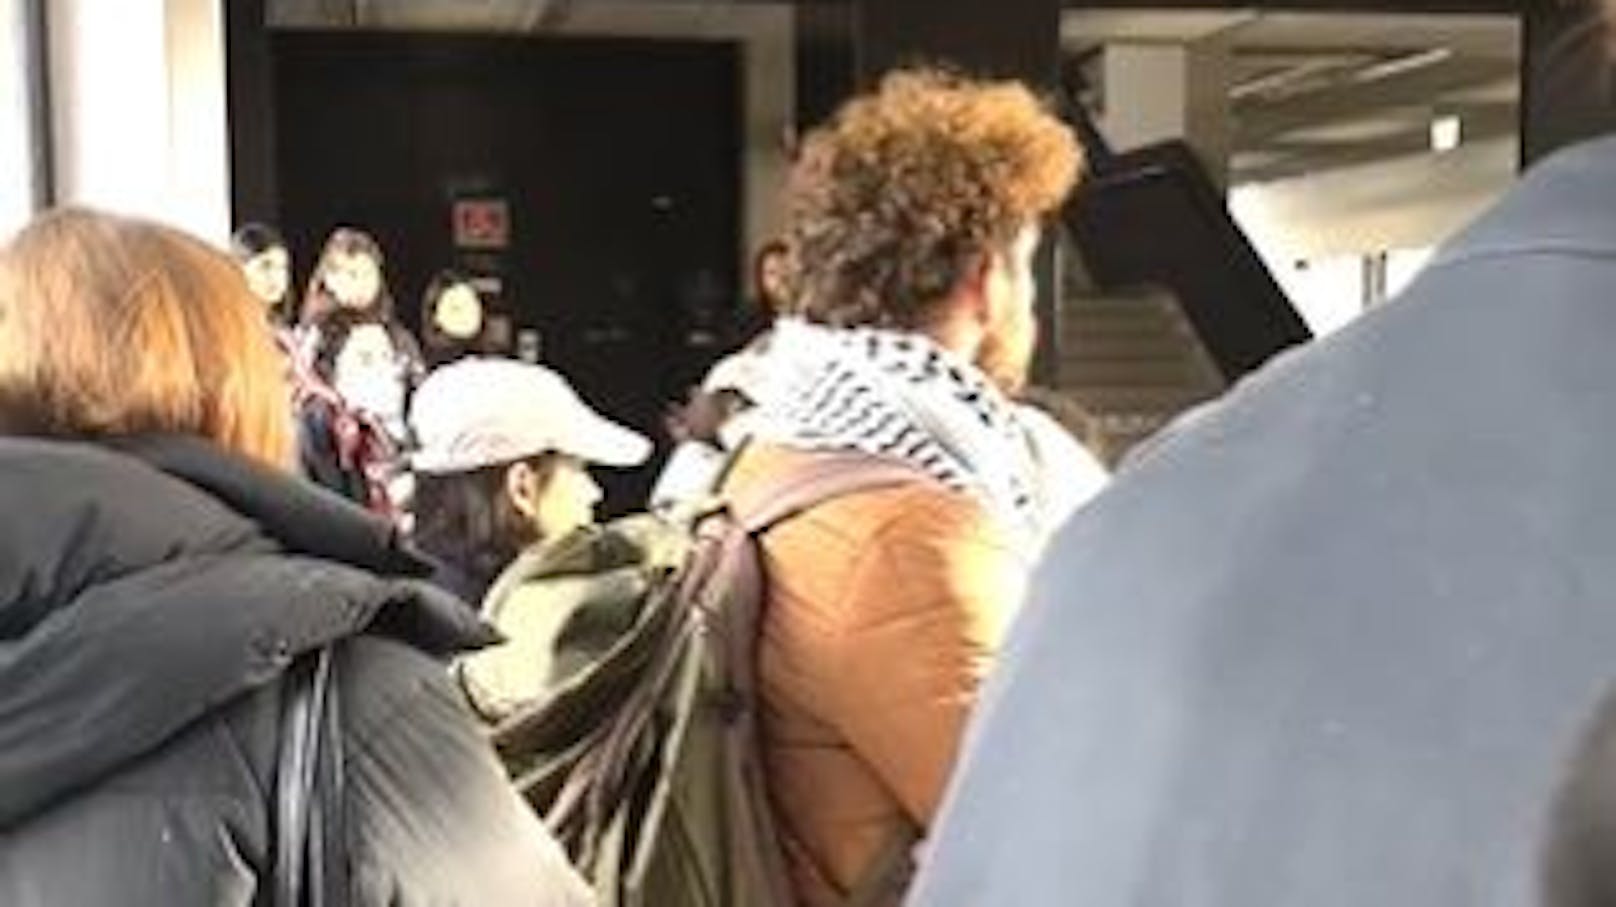 Jüdische Studenten auf Universität attackiert